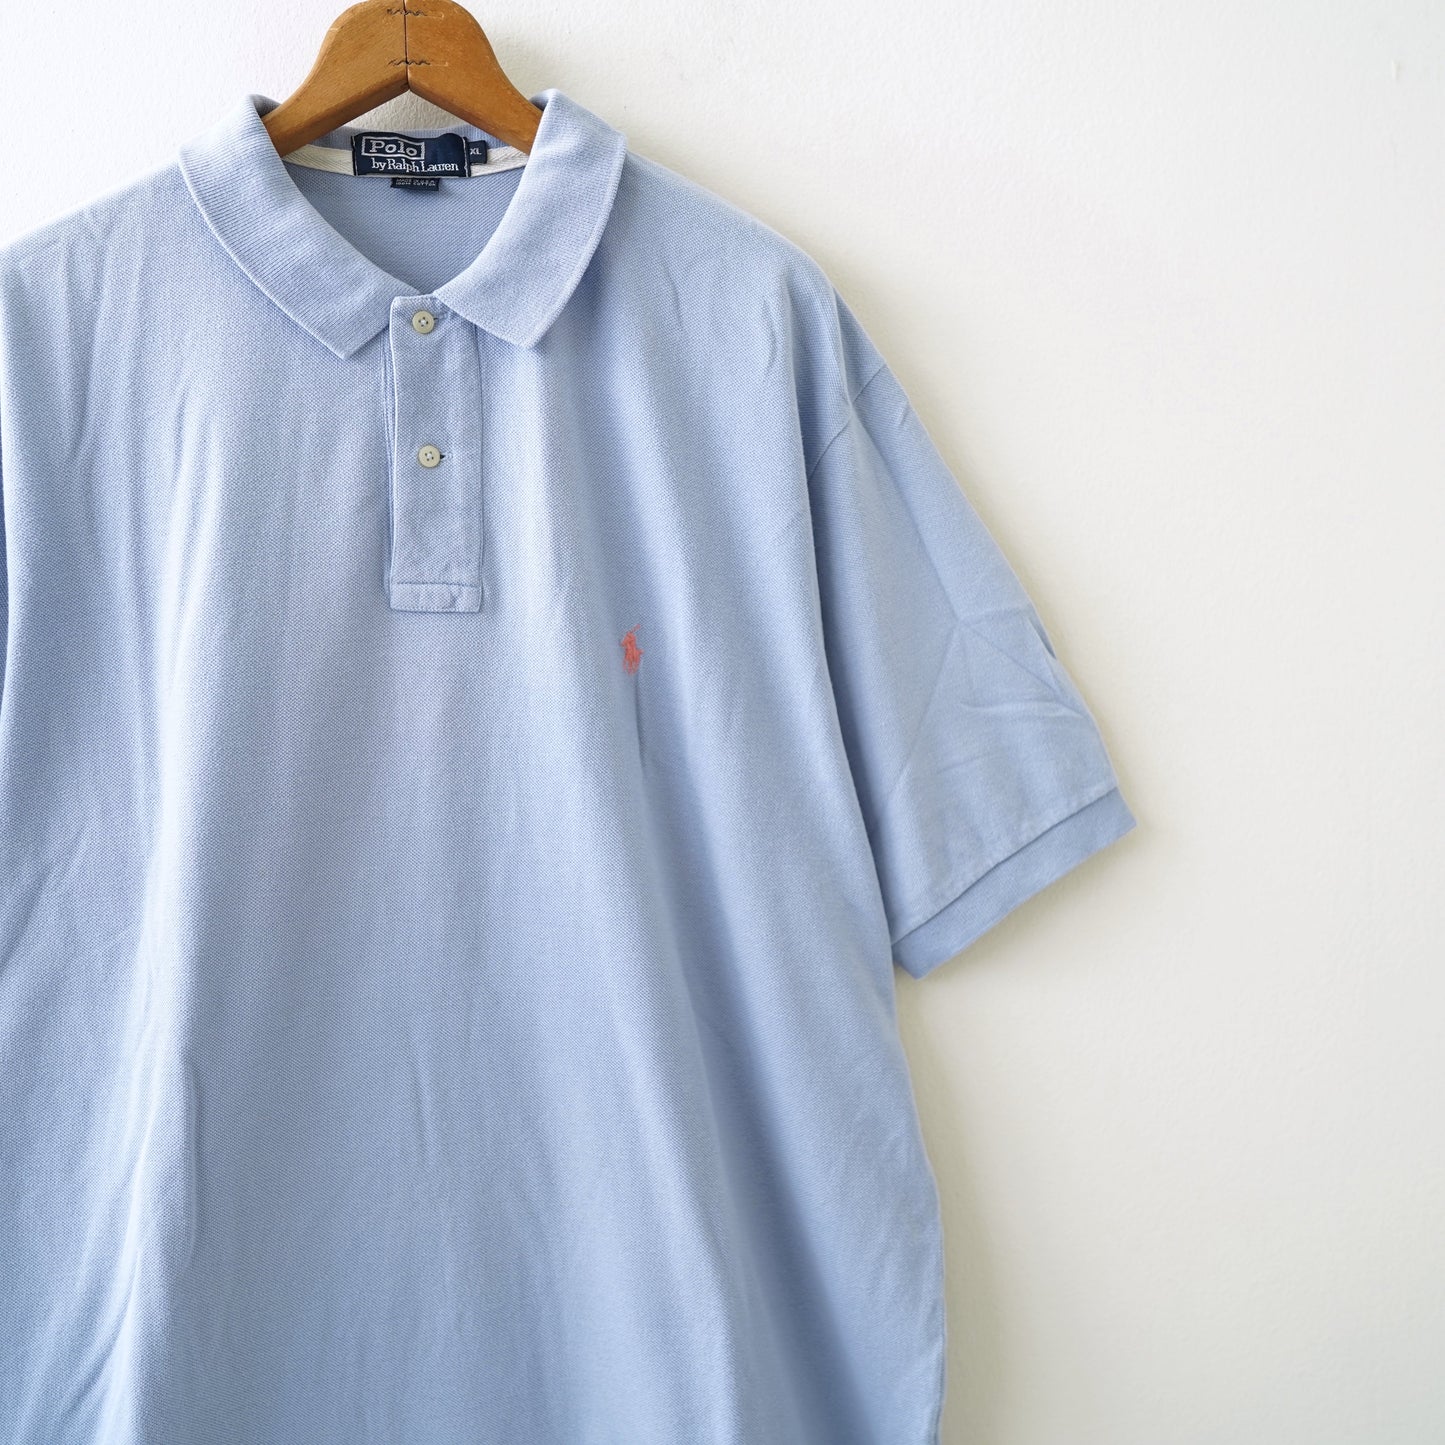 Polo by Ralph Lauren shirt